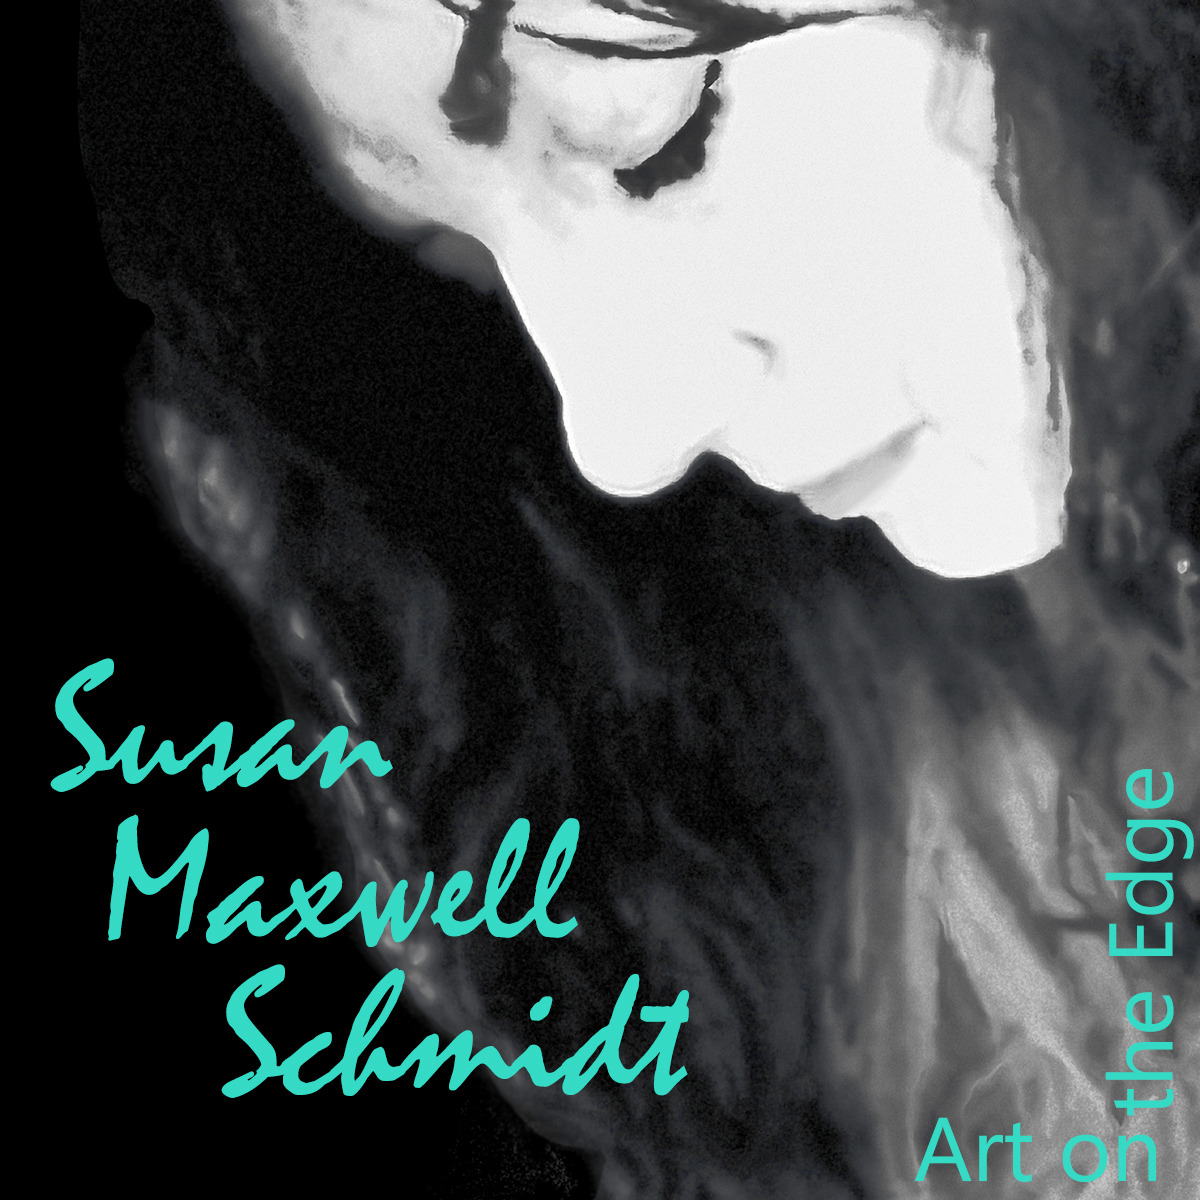 Susan Maxwell Schmidt